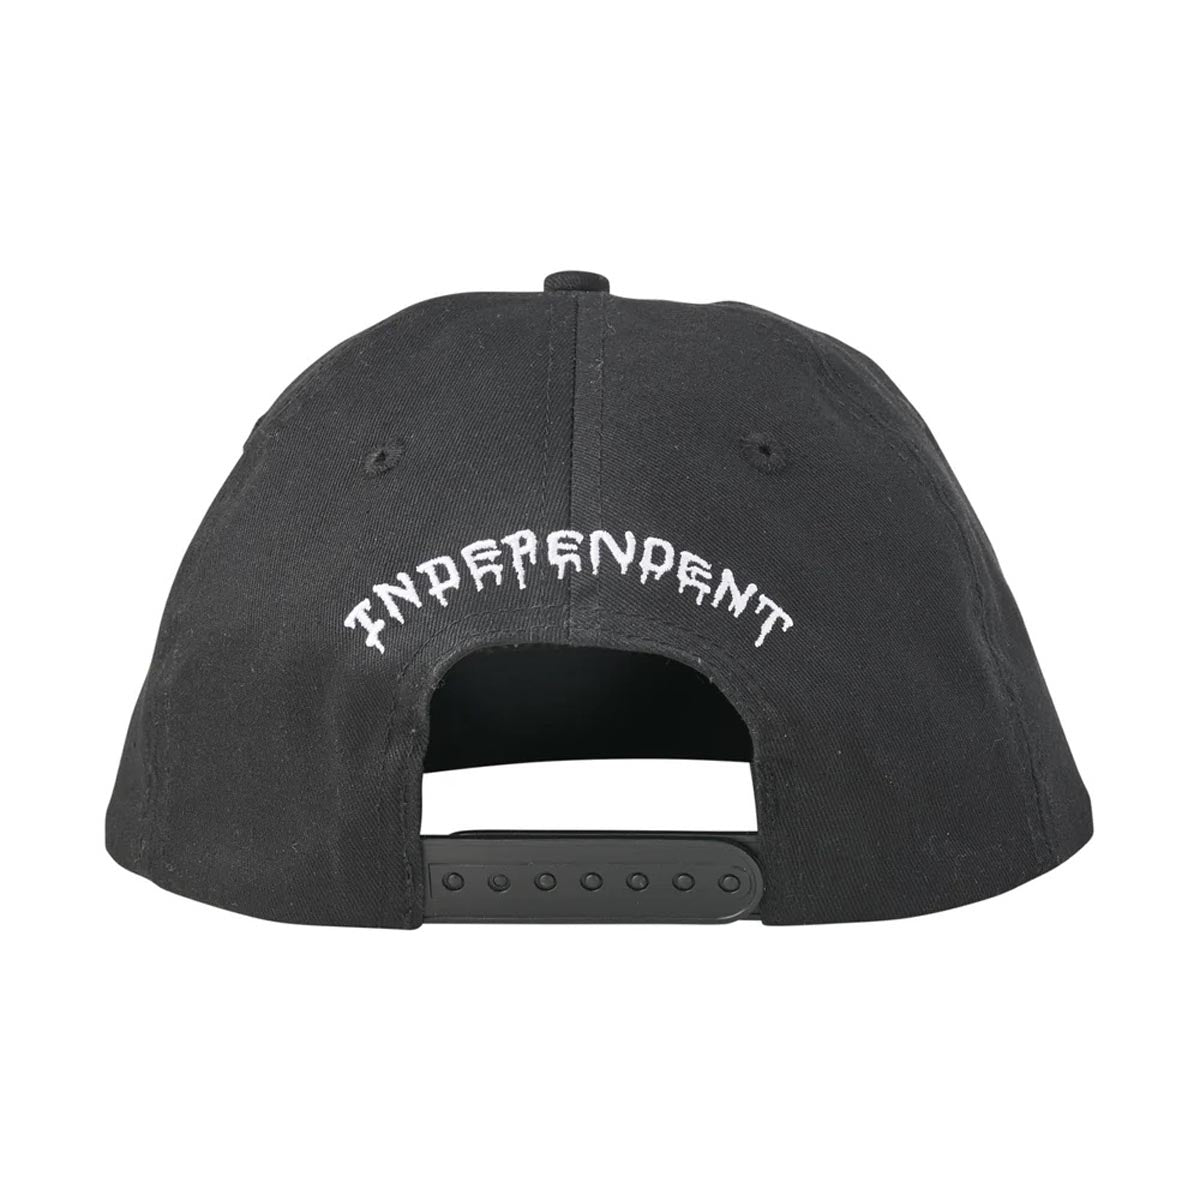 Independent Vandal Snapback Unstructured Hat - Camo/Black image 2